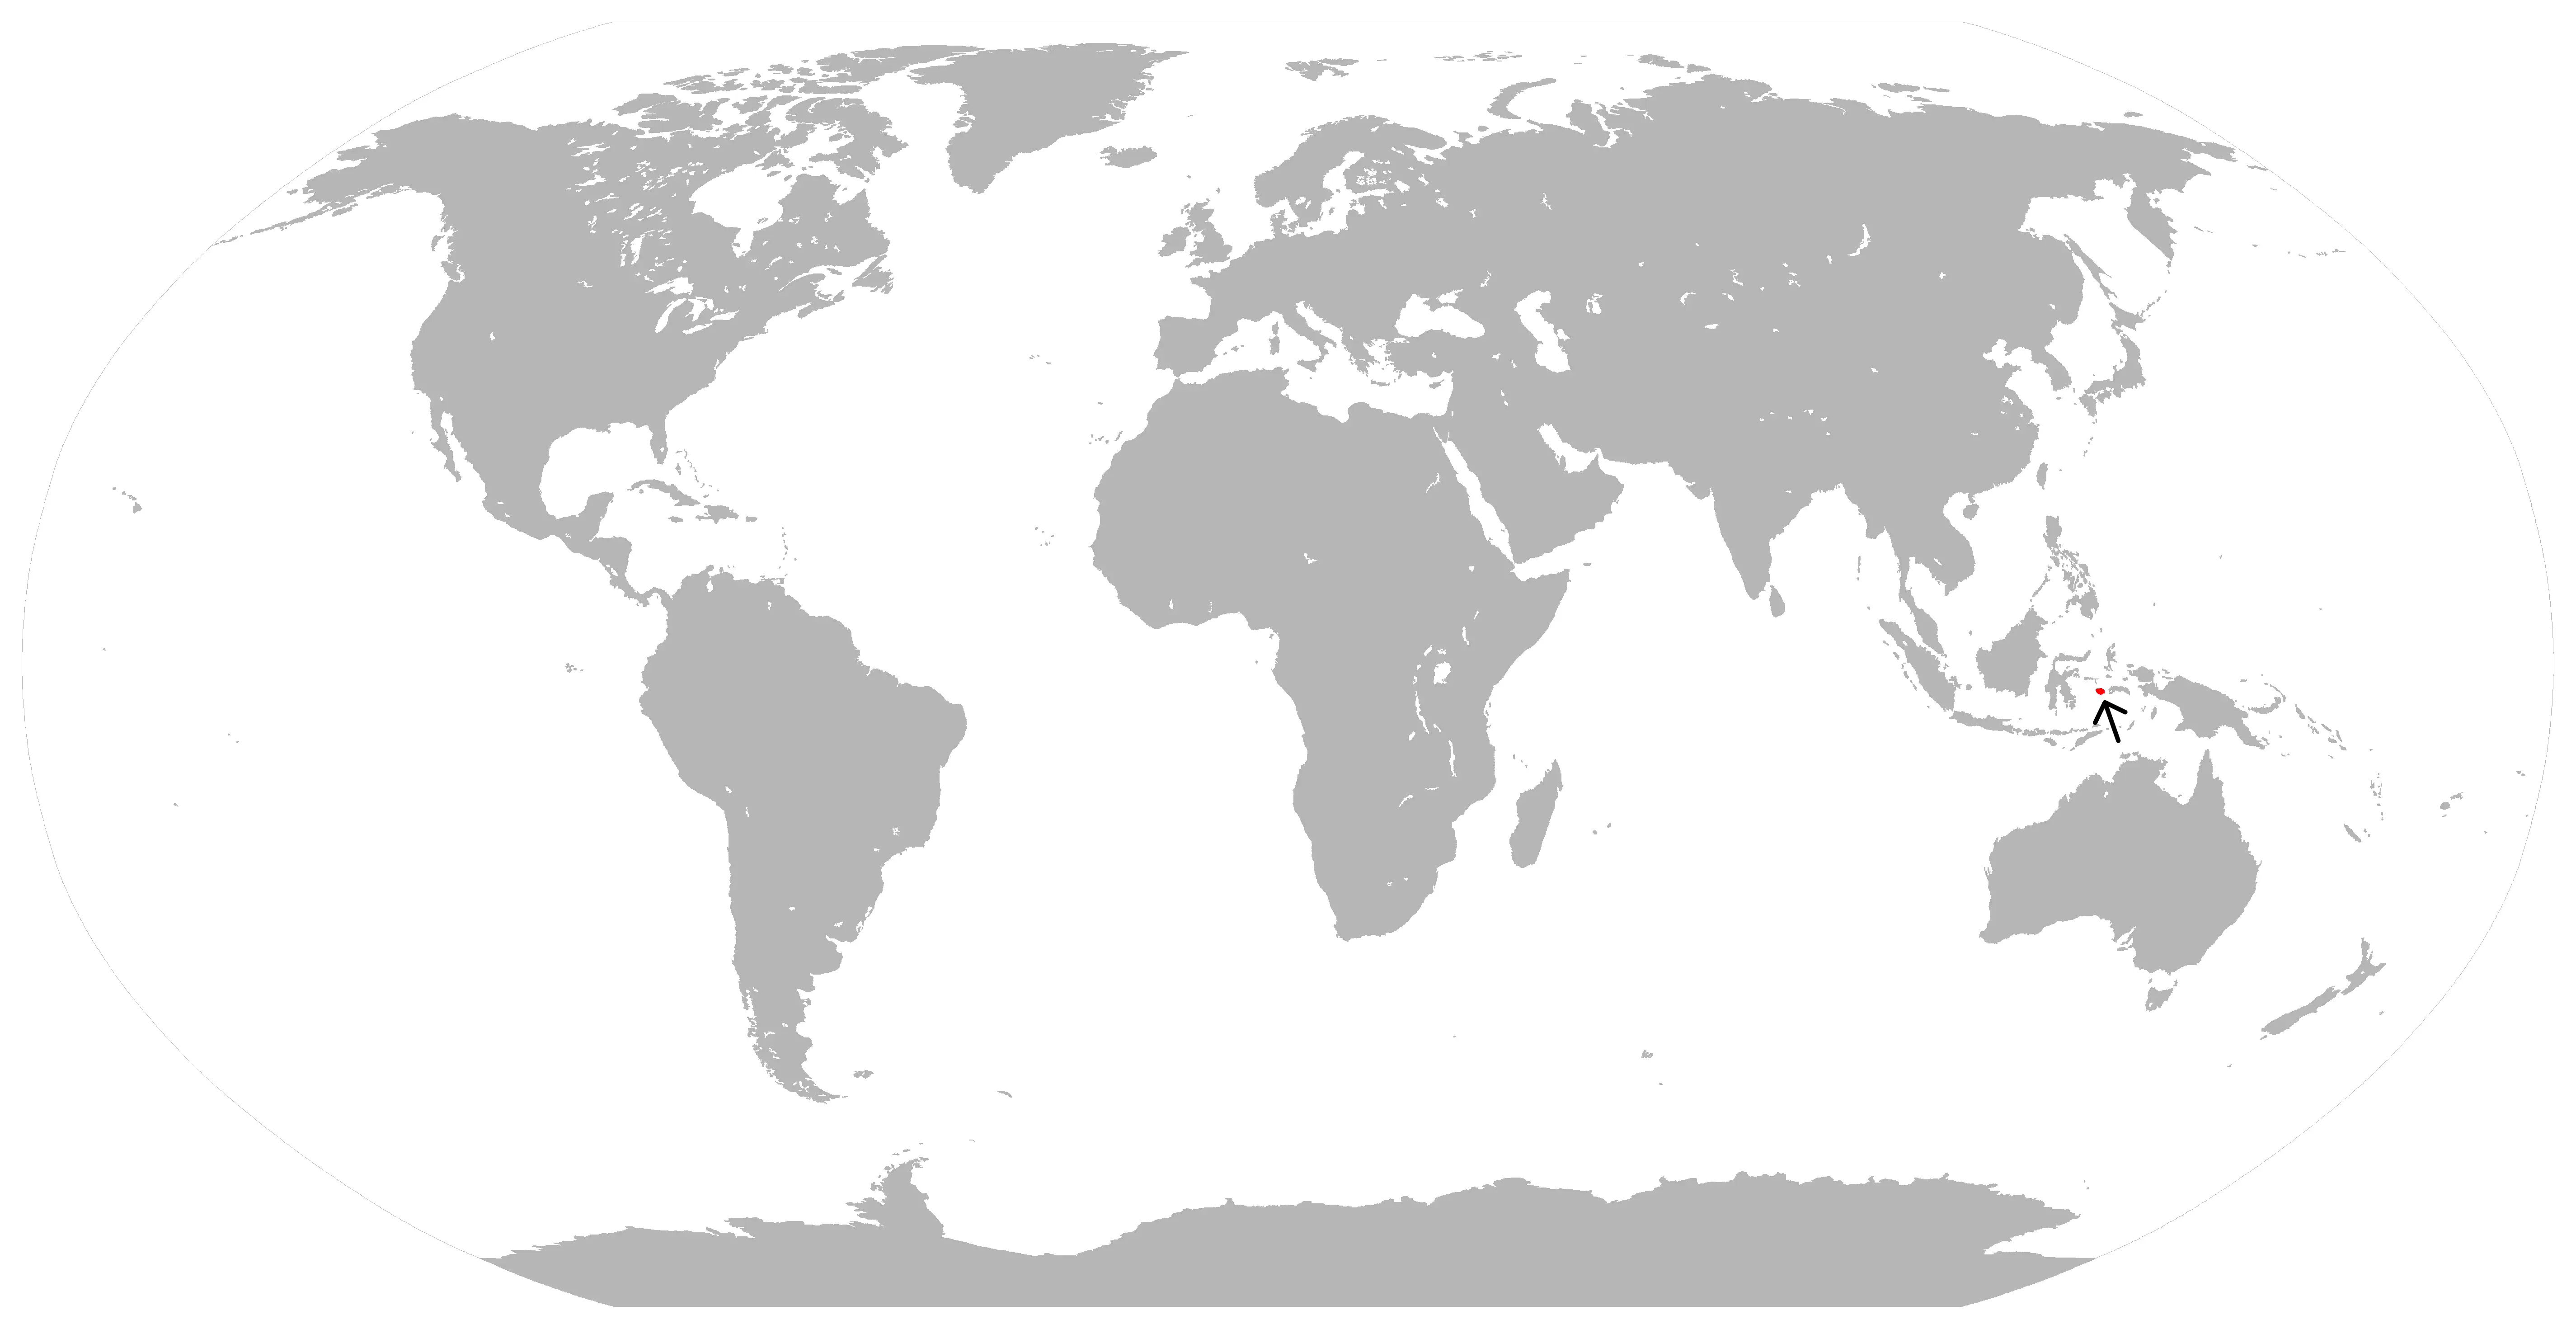  карта середовища проживання